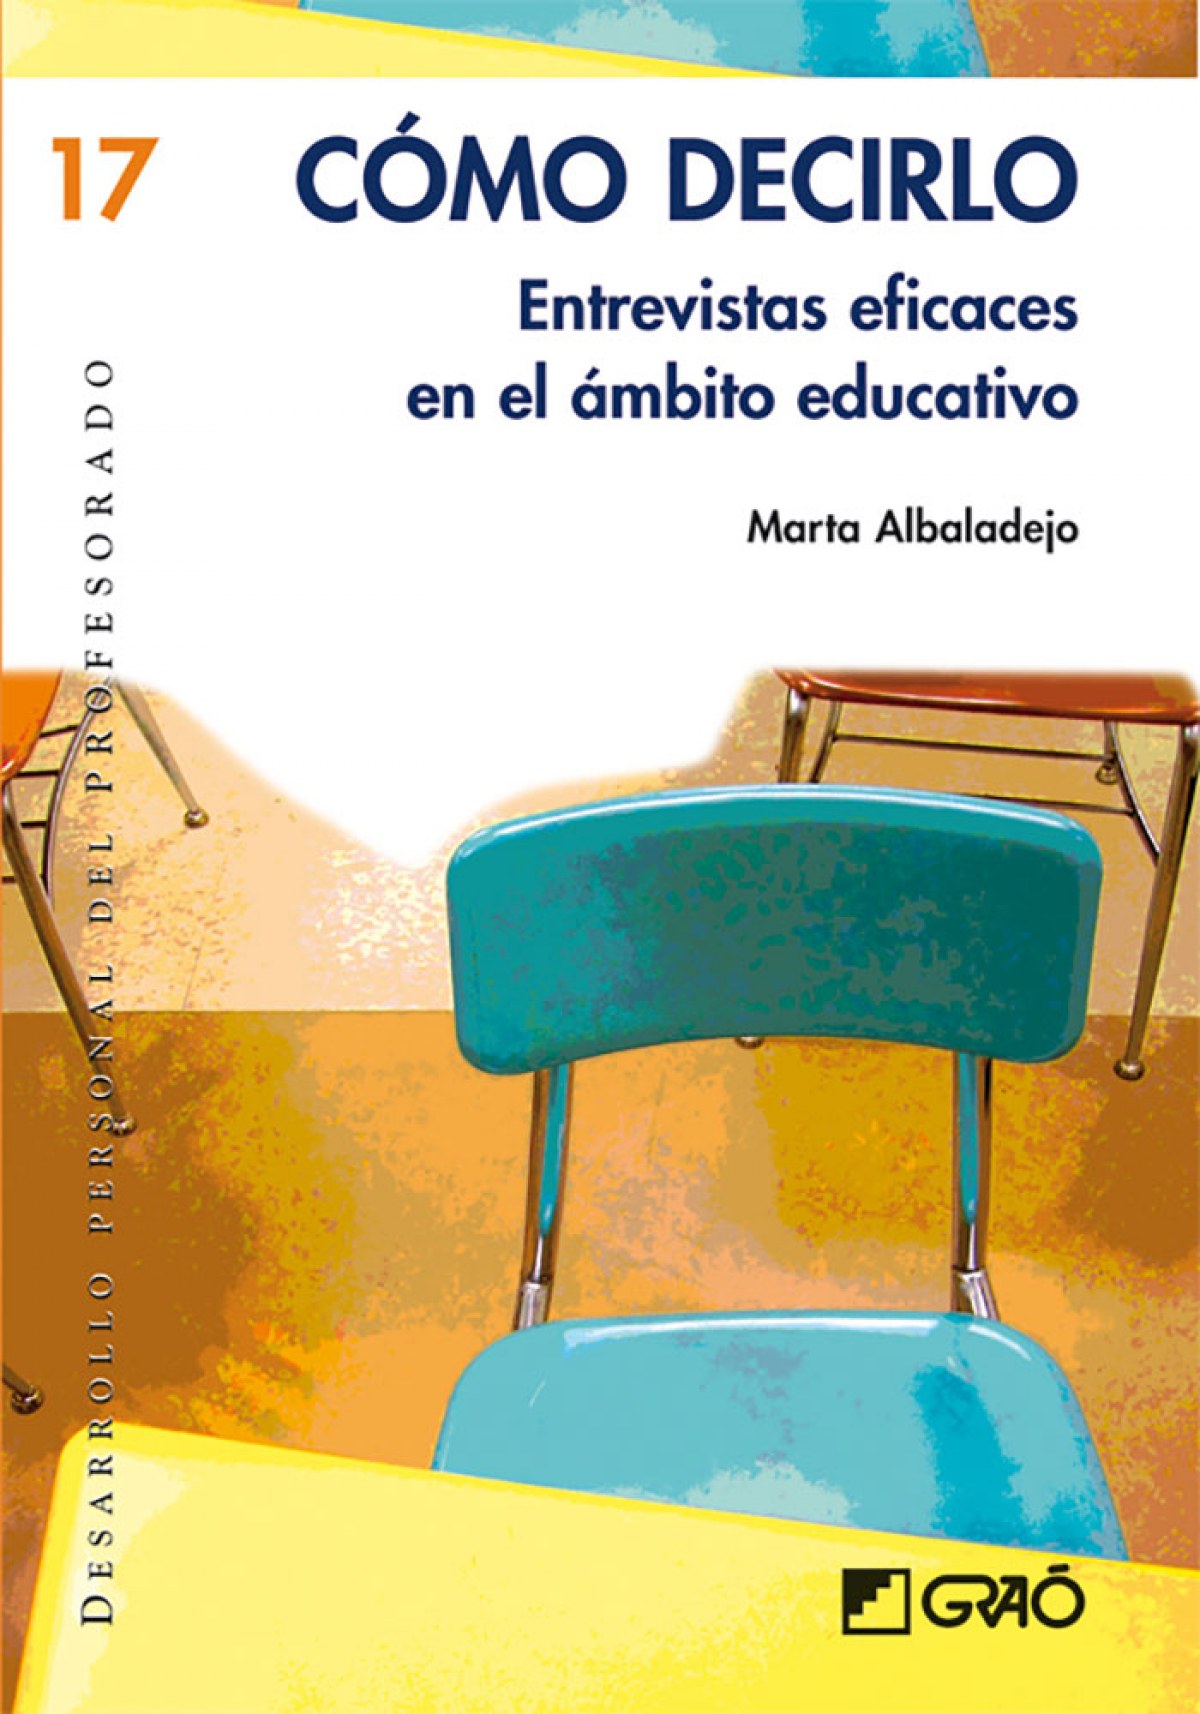 Como decirlo entrevistas eficaces en el ámbito educativo - Albaladejo Mur, Marta